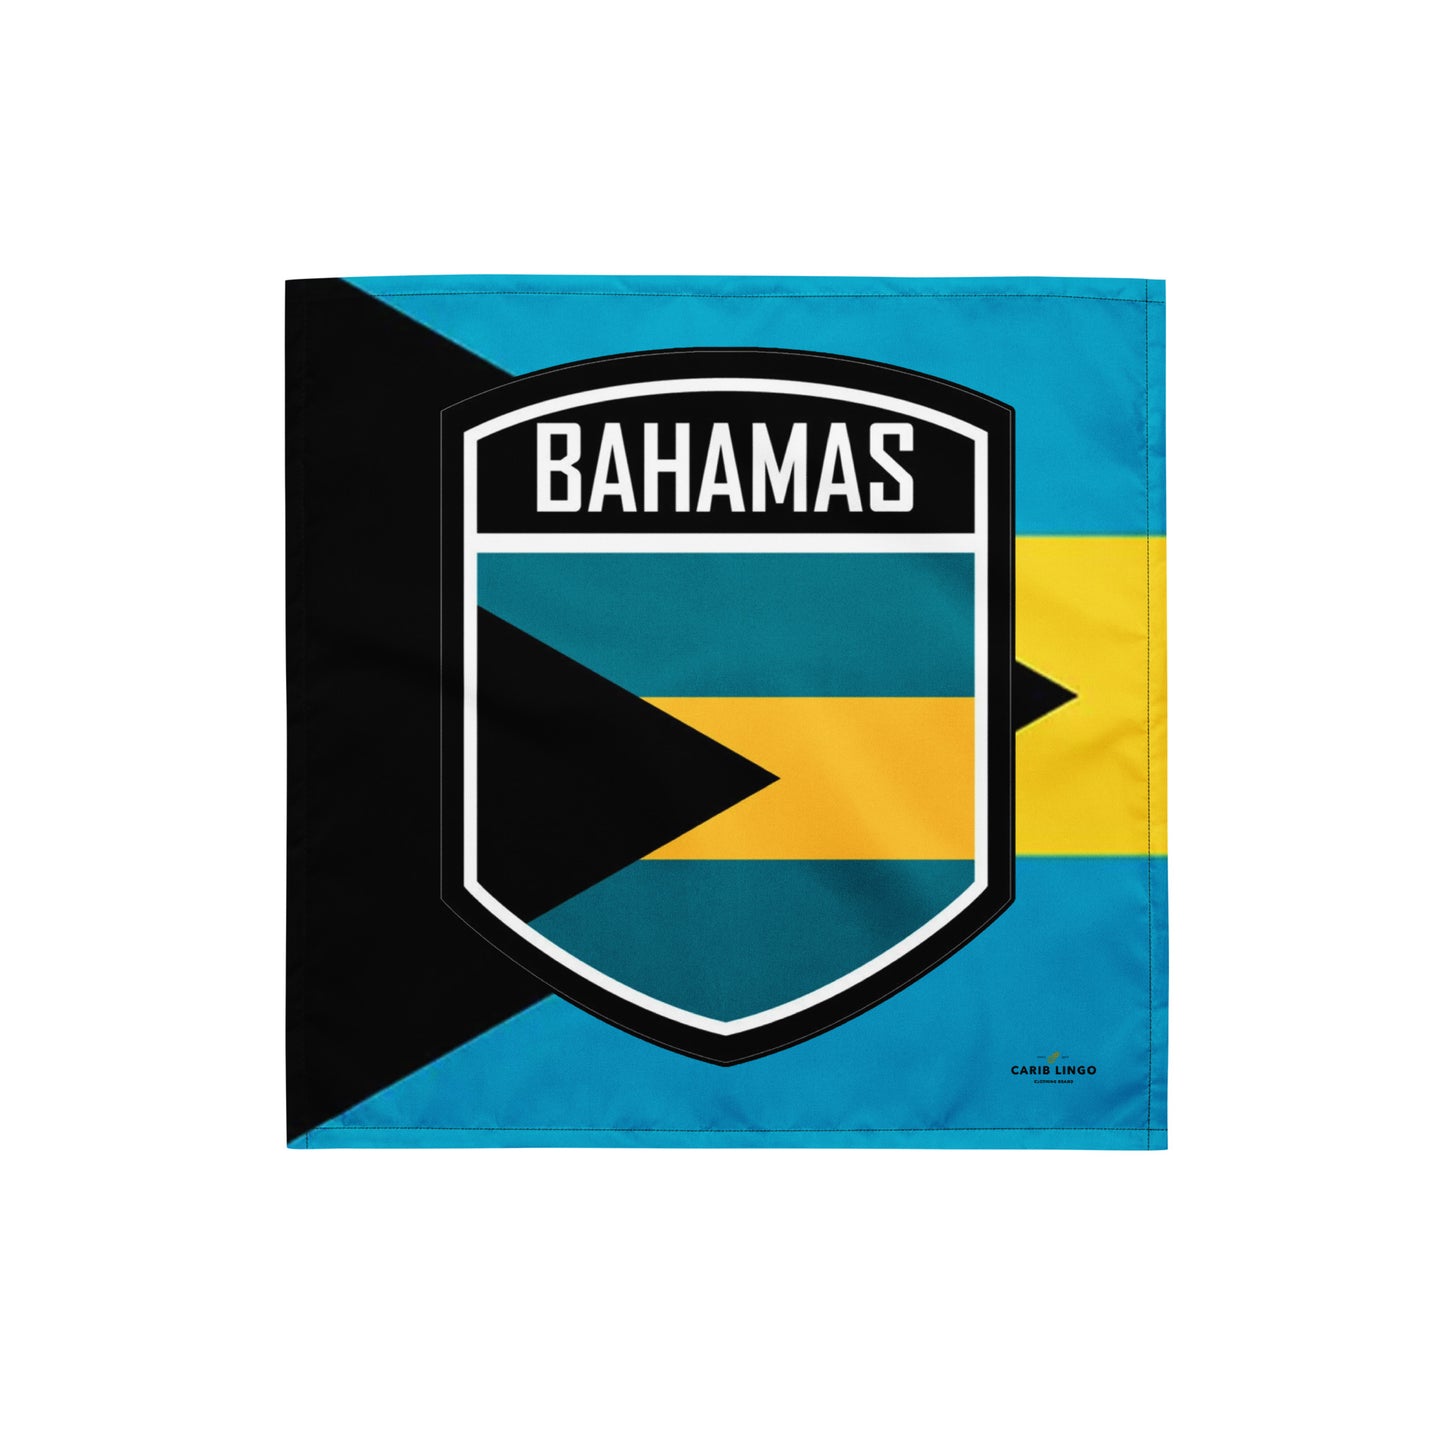 Bahamas bandana